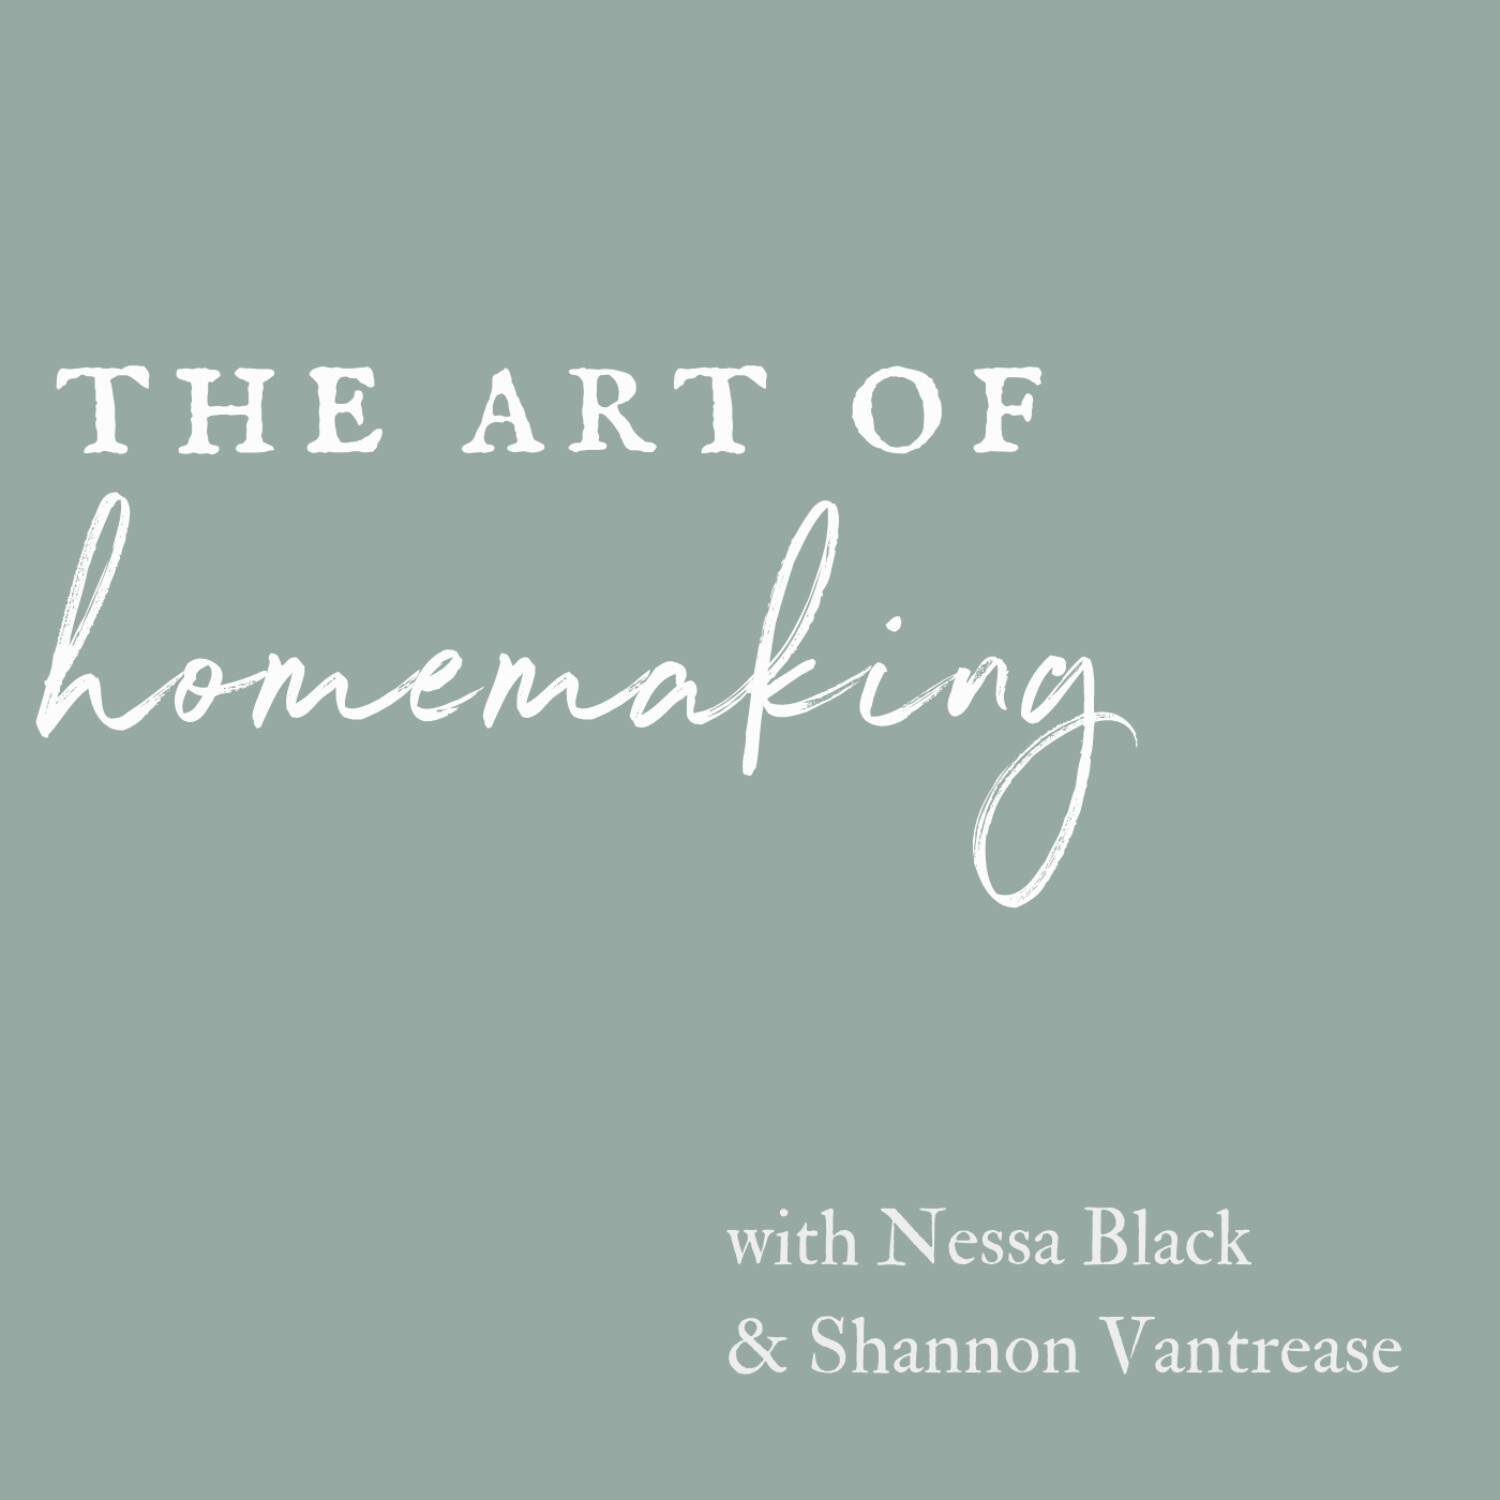 The Art of Homemaking Podcast Trailer